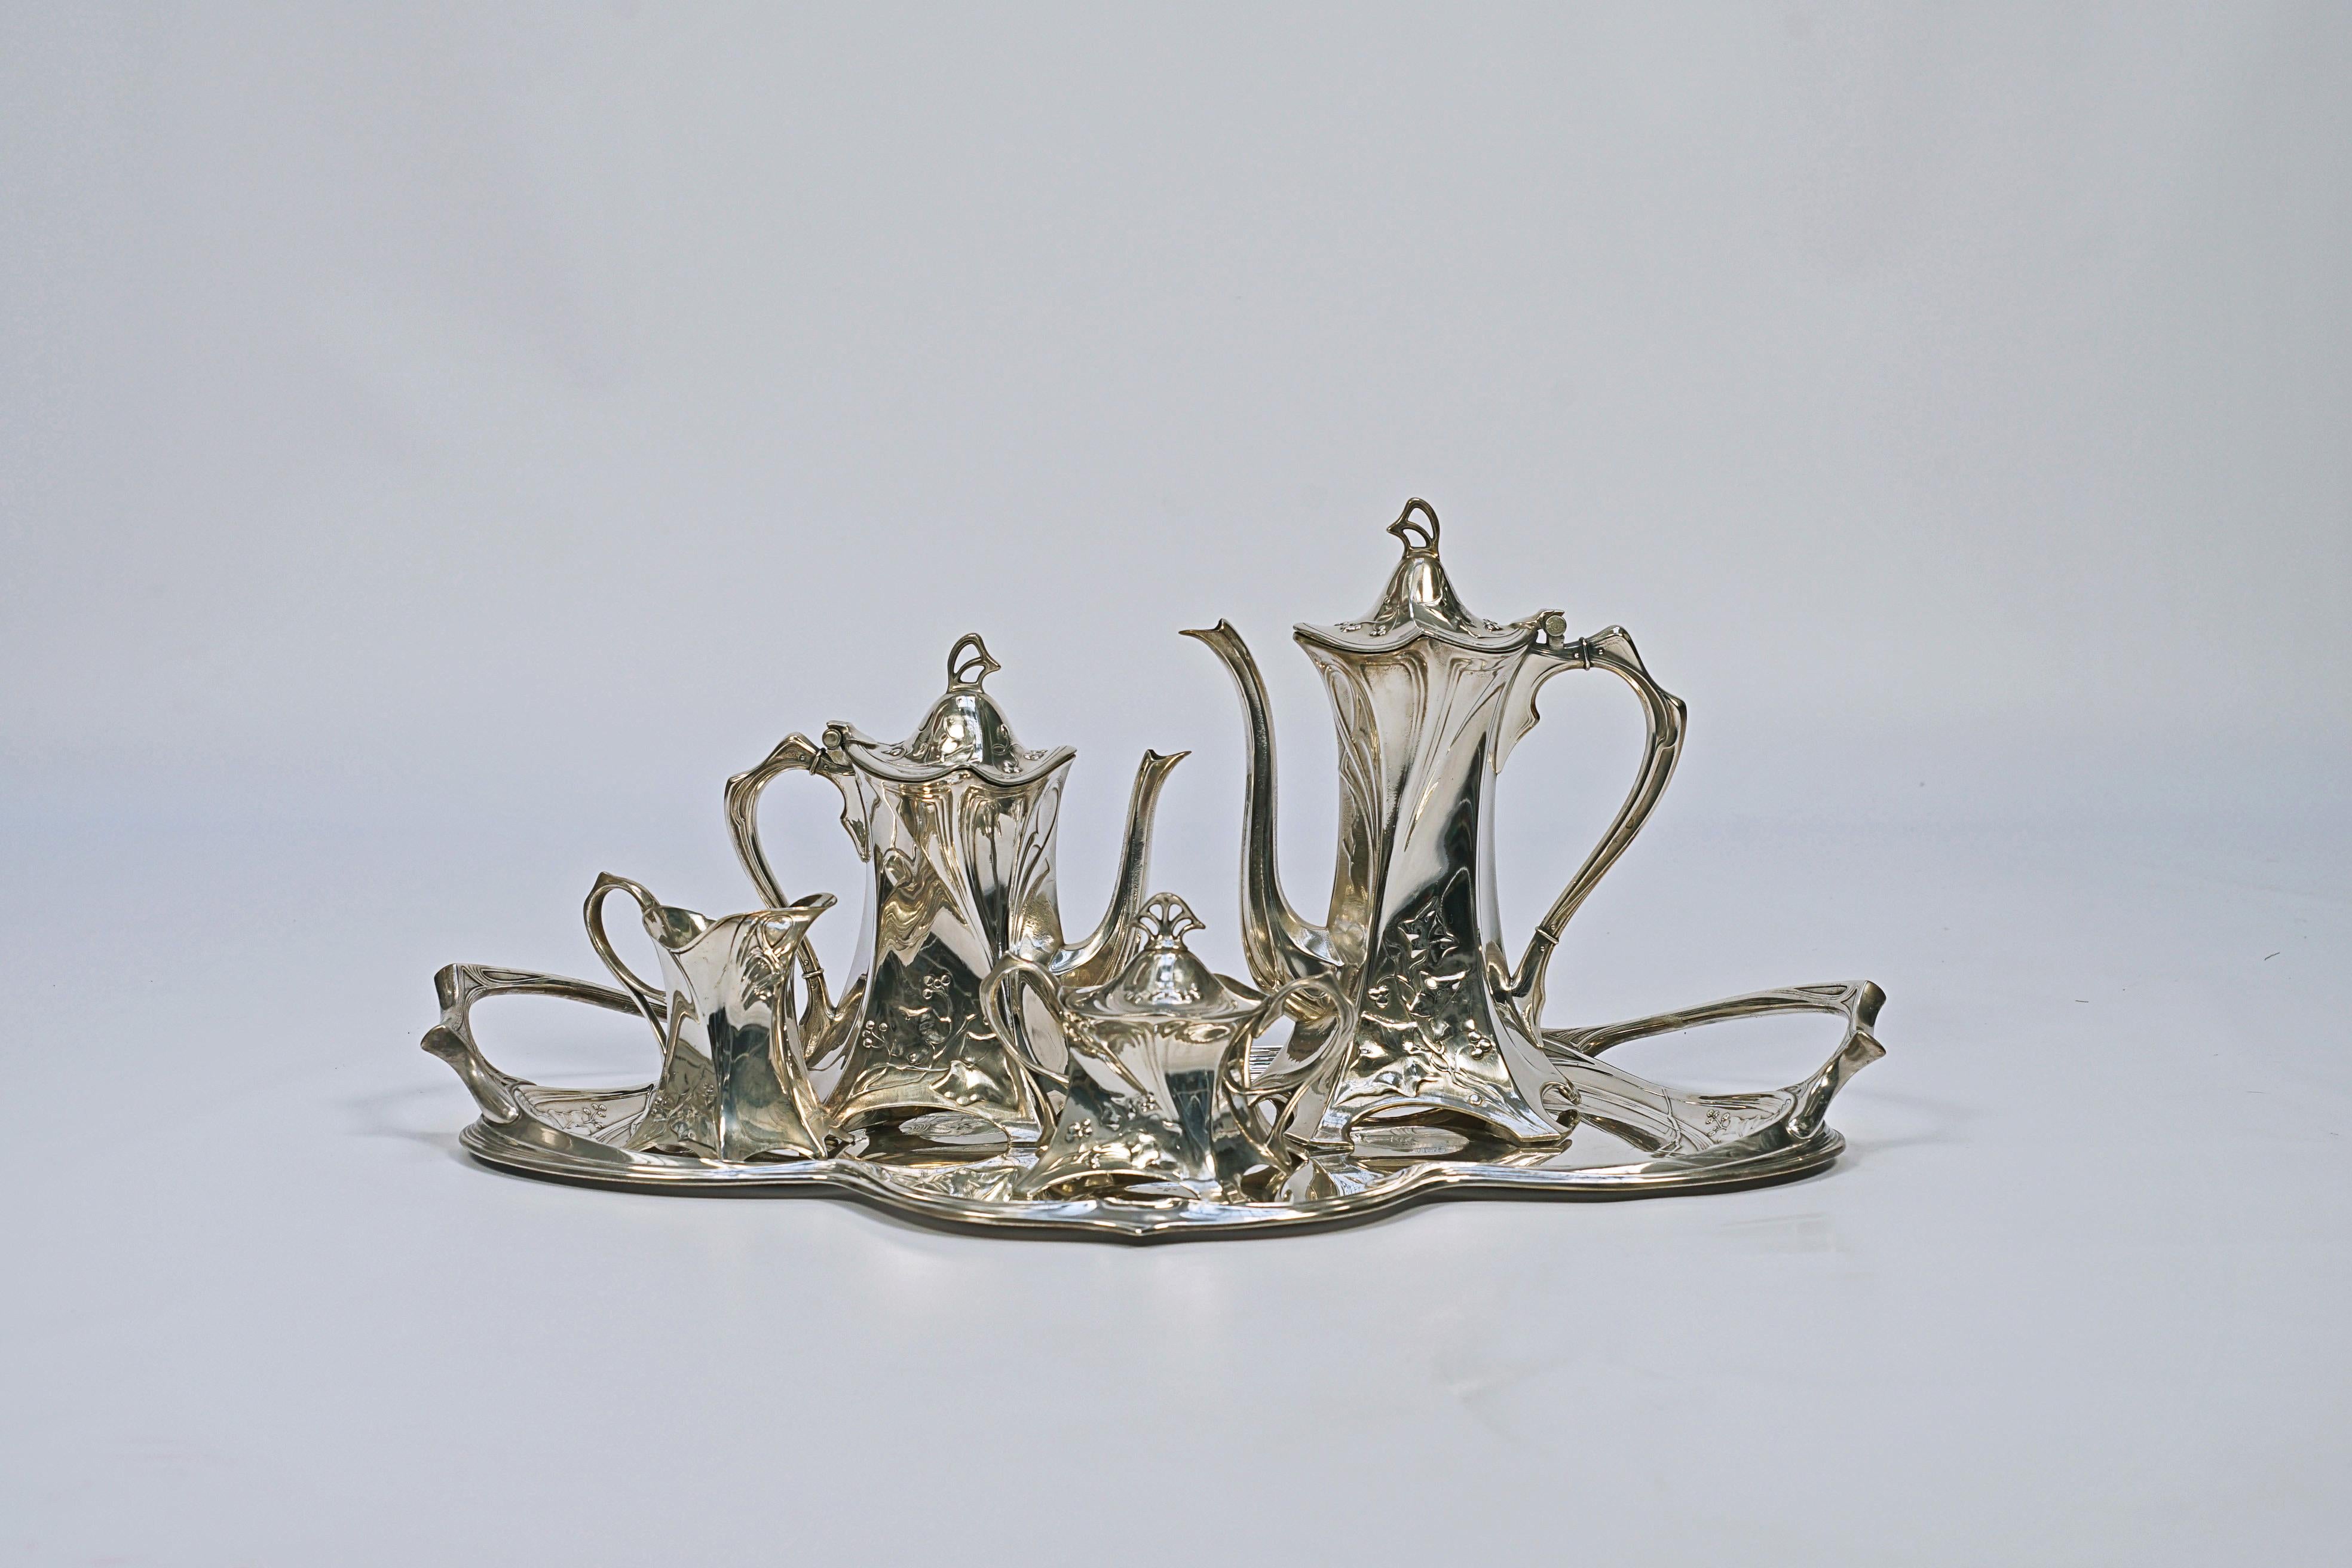 5-teiliges Teeservice aus versilberter Bronze. Hergestellt von der WMF-Württembergische Metallwarenfabrik (1853 bis heute).

Graham Dry (1906), 